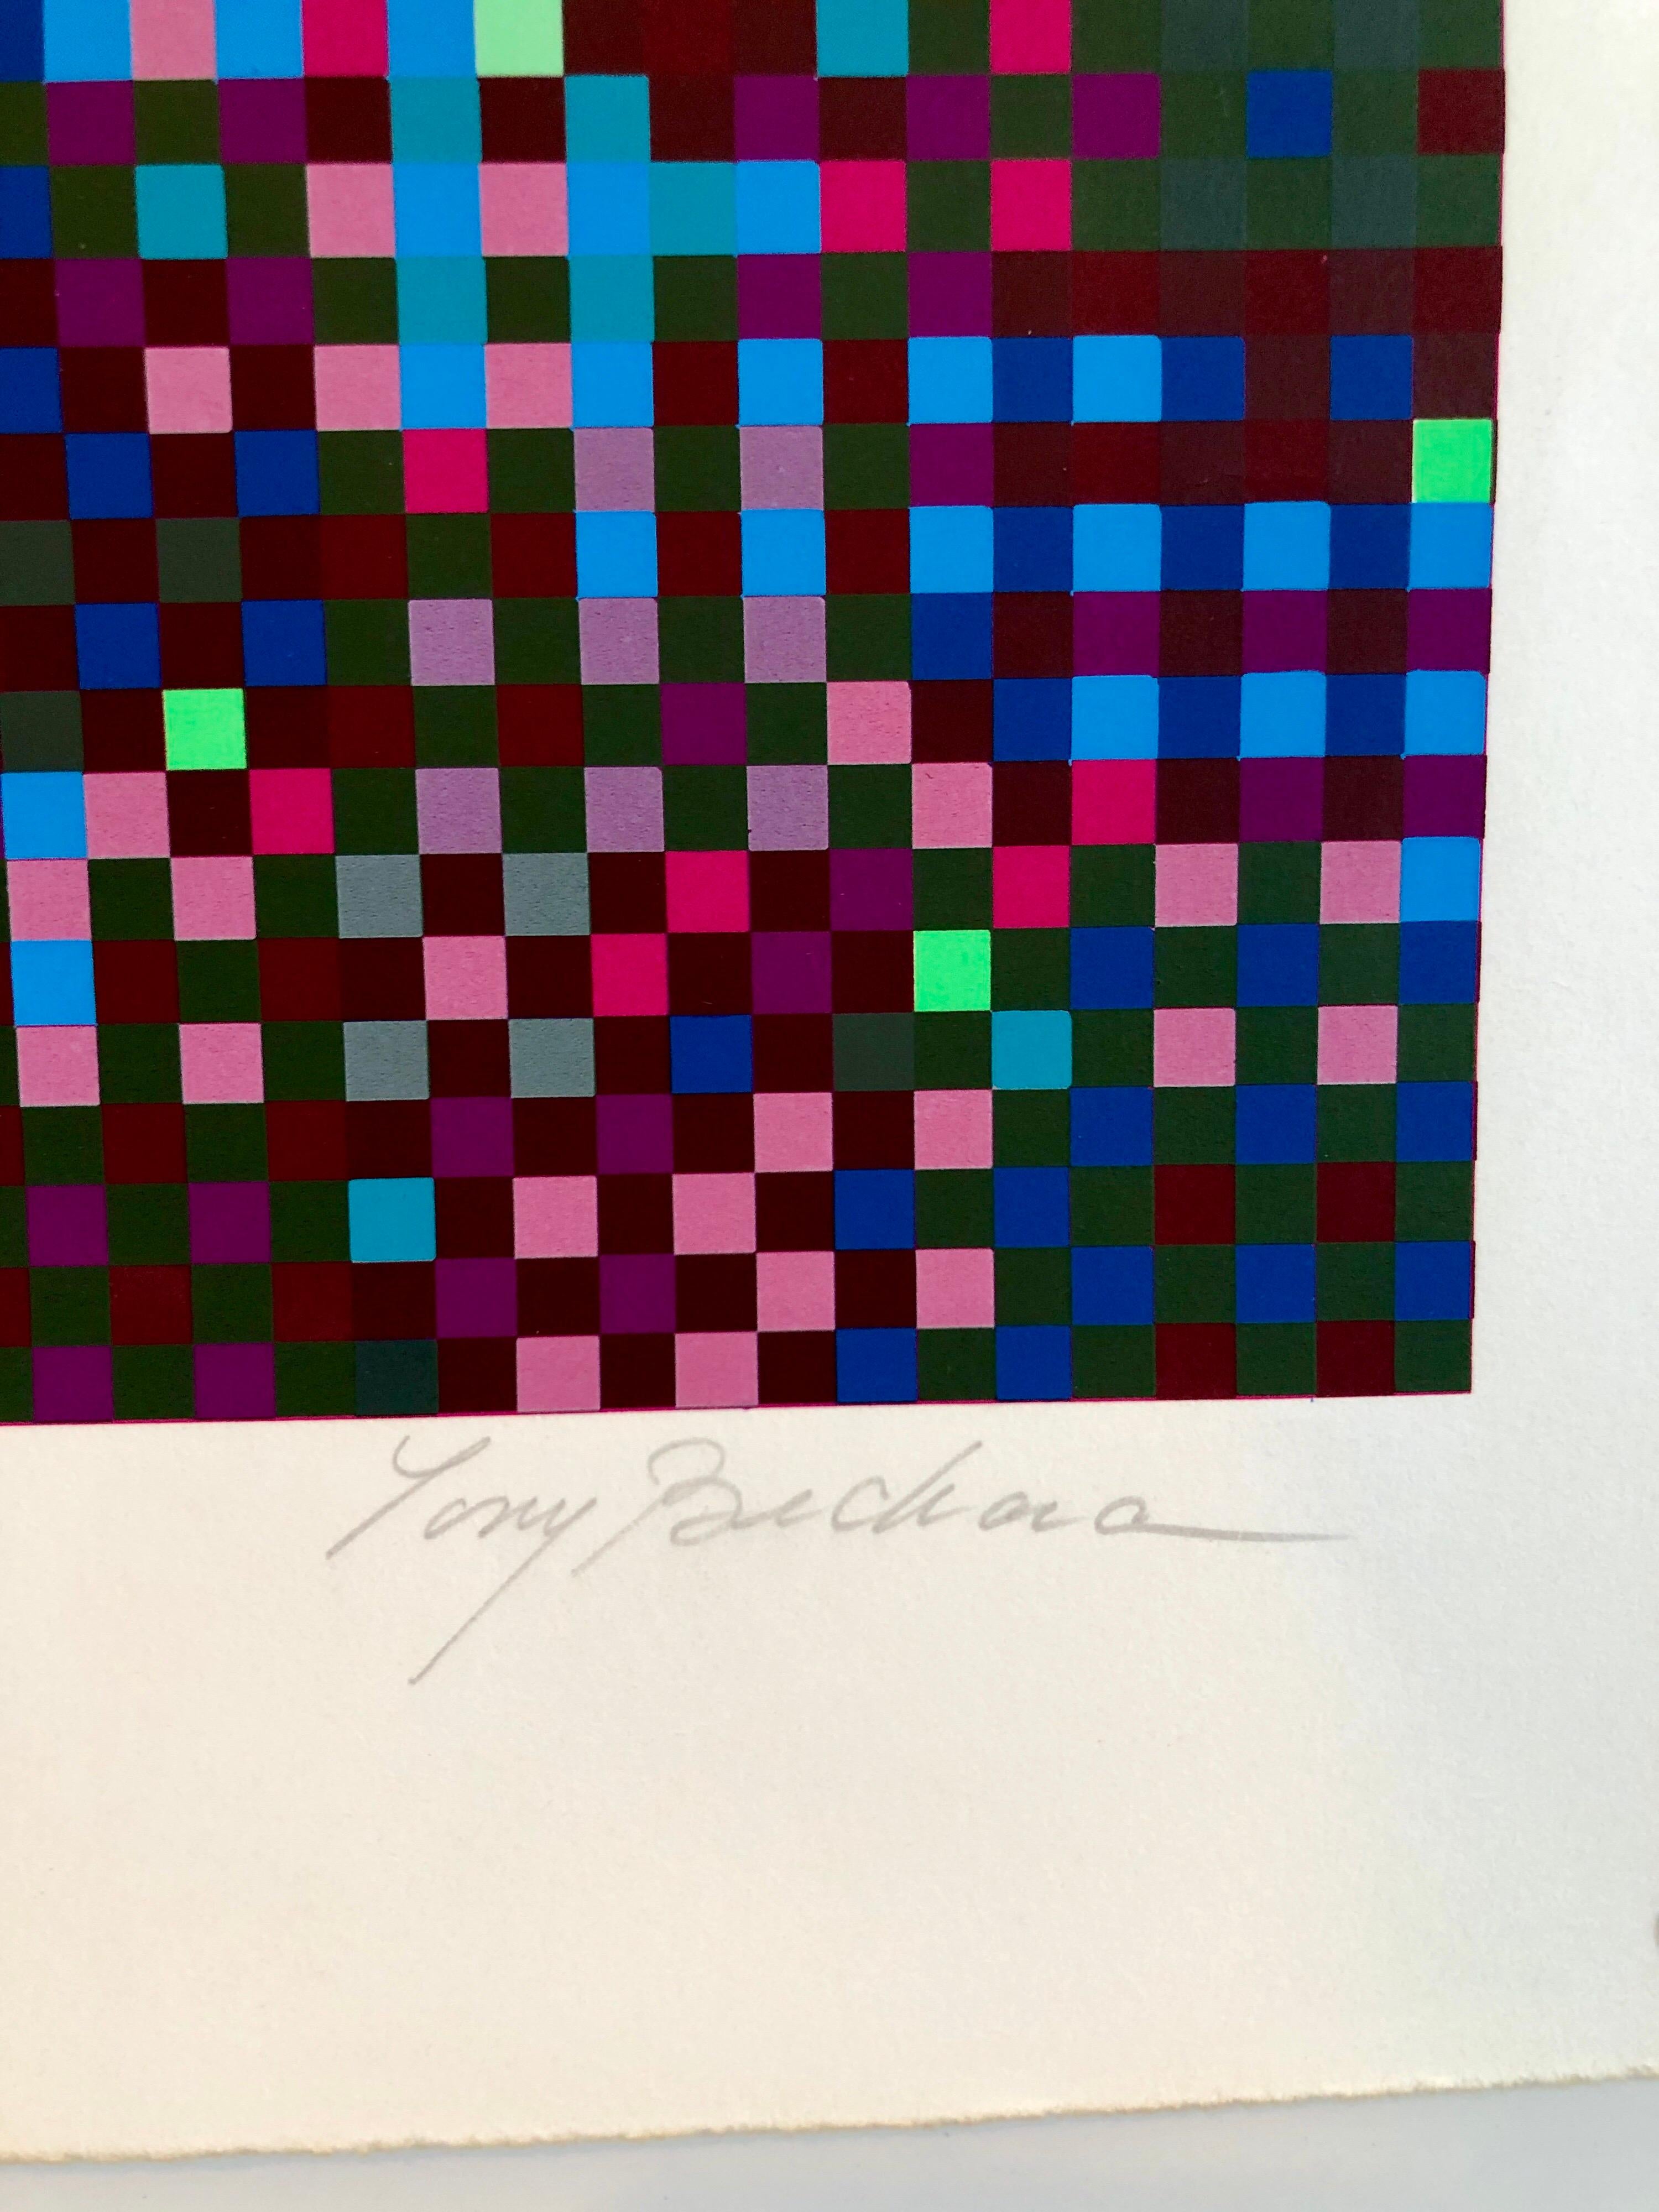 Grille de couleurs. Forme de ziggourat. Sérigraphie numérotée et signée à la main.
Tony Bechara, Artistics né à Porto Rico en 1942. Peintre, graveur. M. Bechara a fréquenté l'université de Georgetown à Washington, C.I.D., ainsi que l'école de